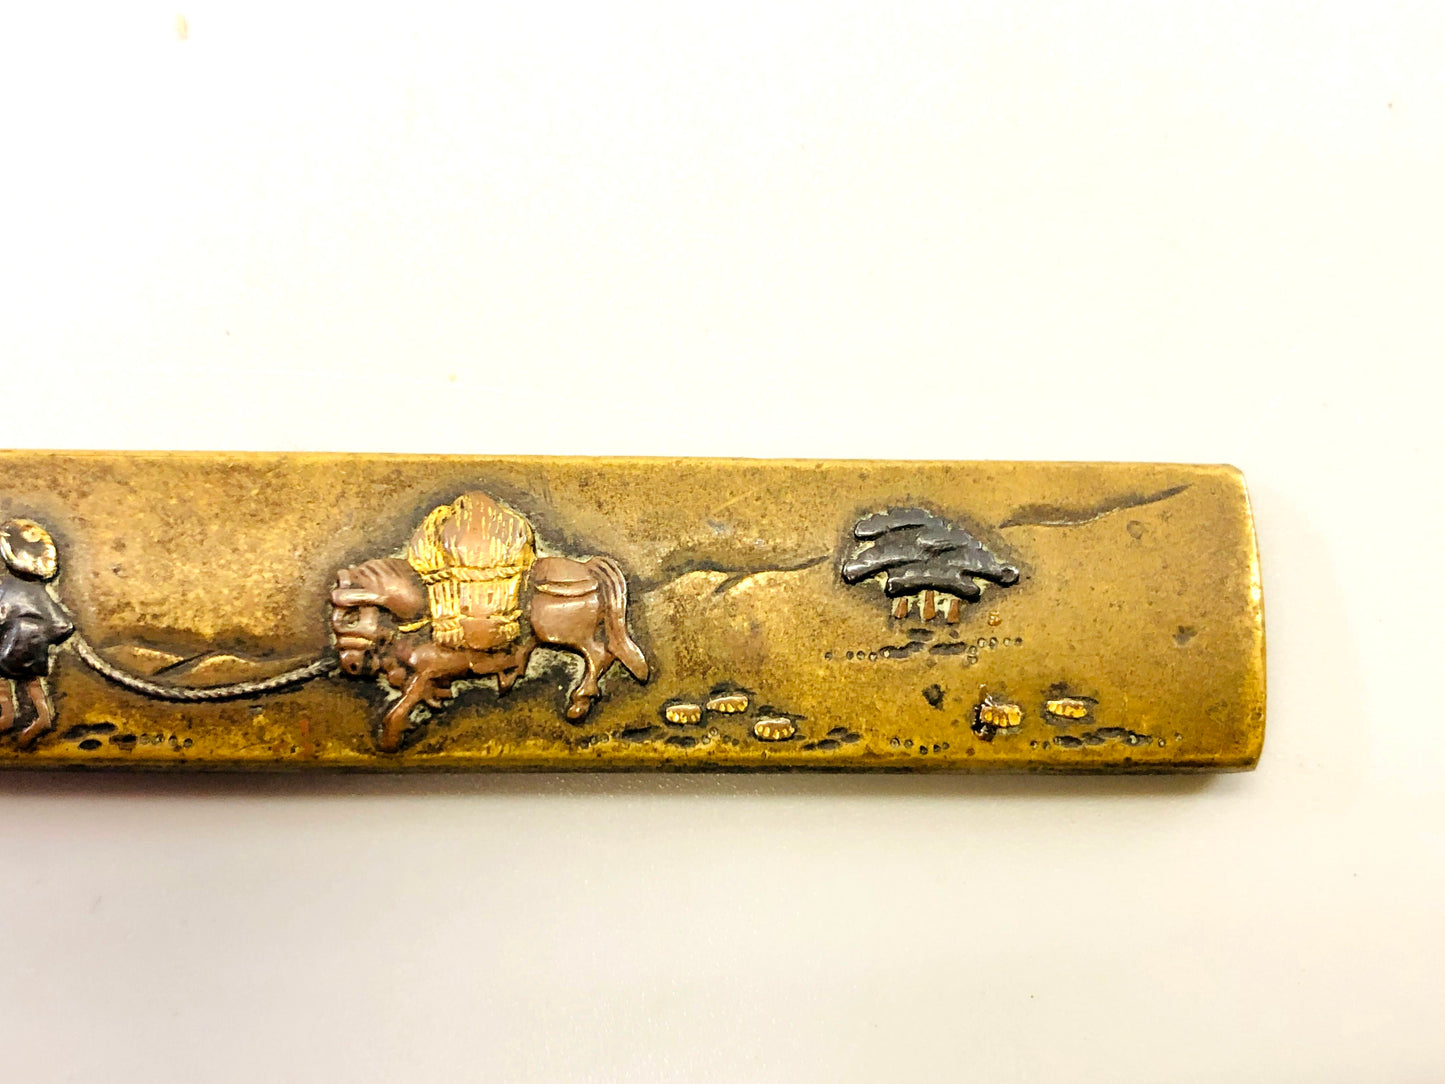 Y5314 TSUKA Kogatana small sword Copper inlay horse box Japan Koshirae antique